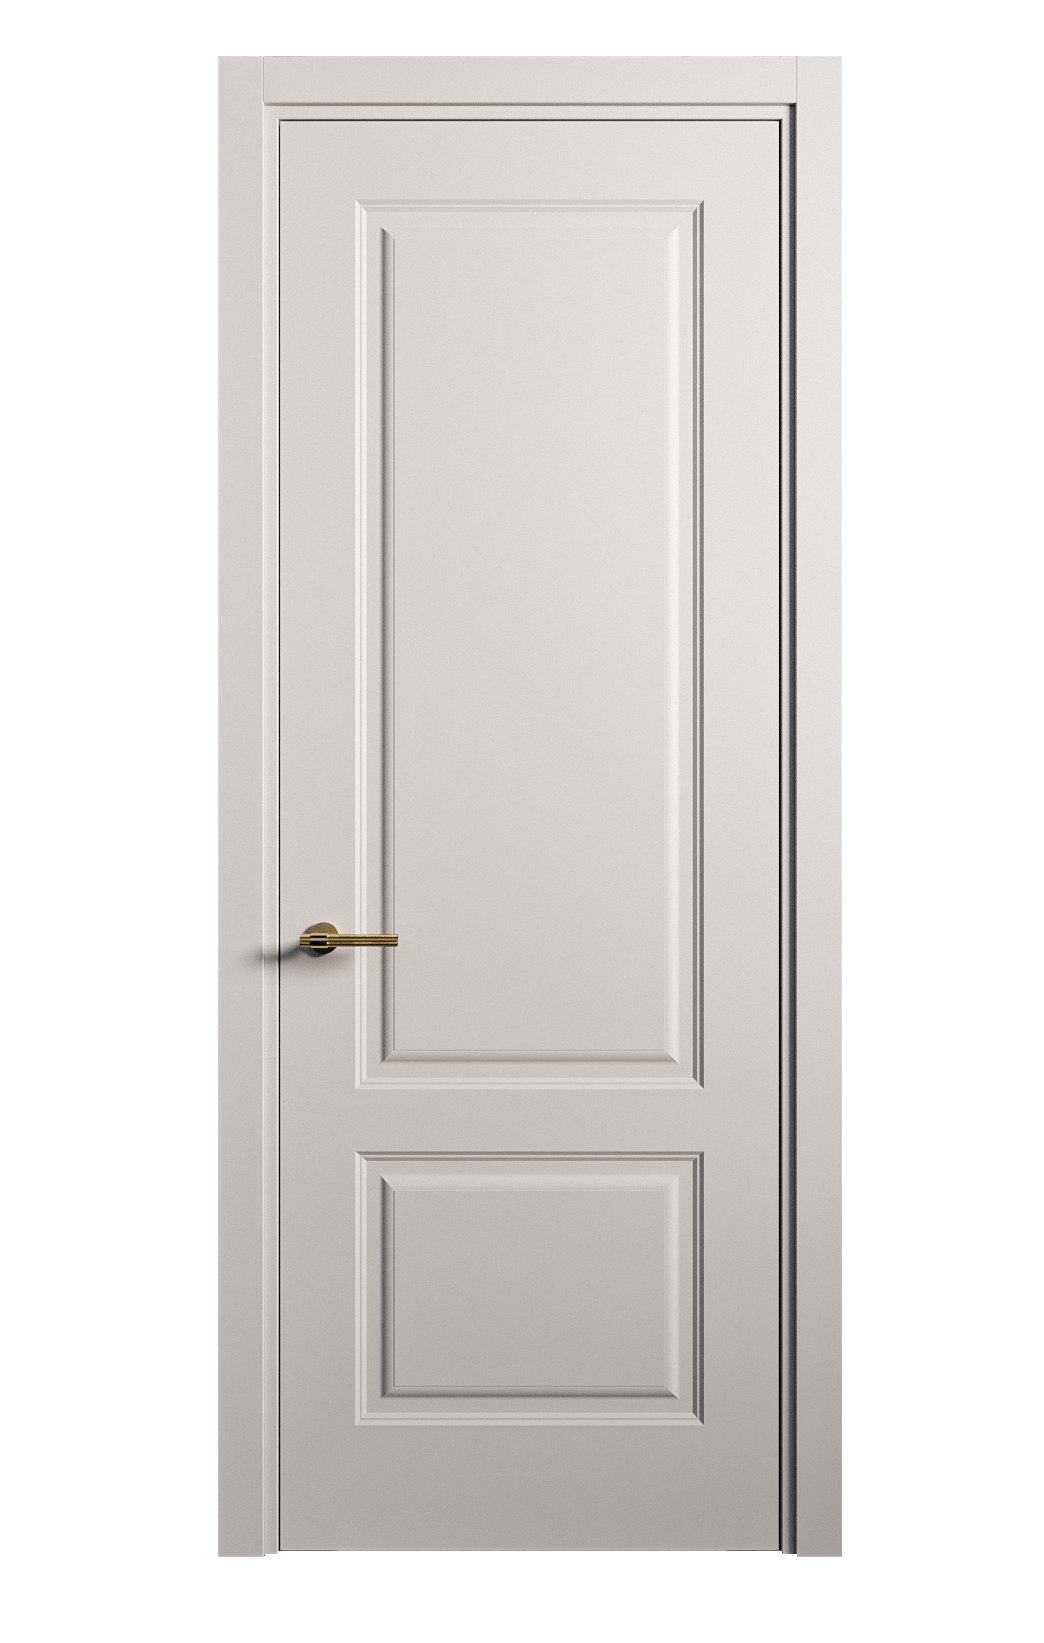 Межкомнатная дверь Вита-1 глухая эмаль ral 7047 26247